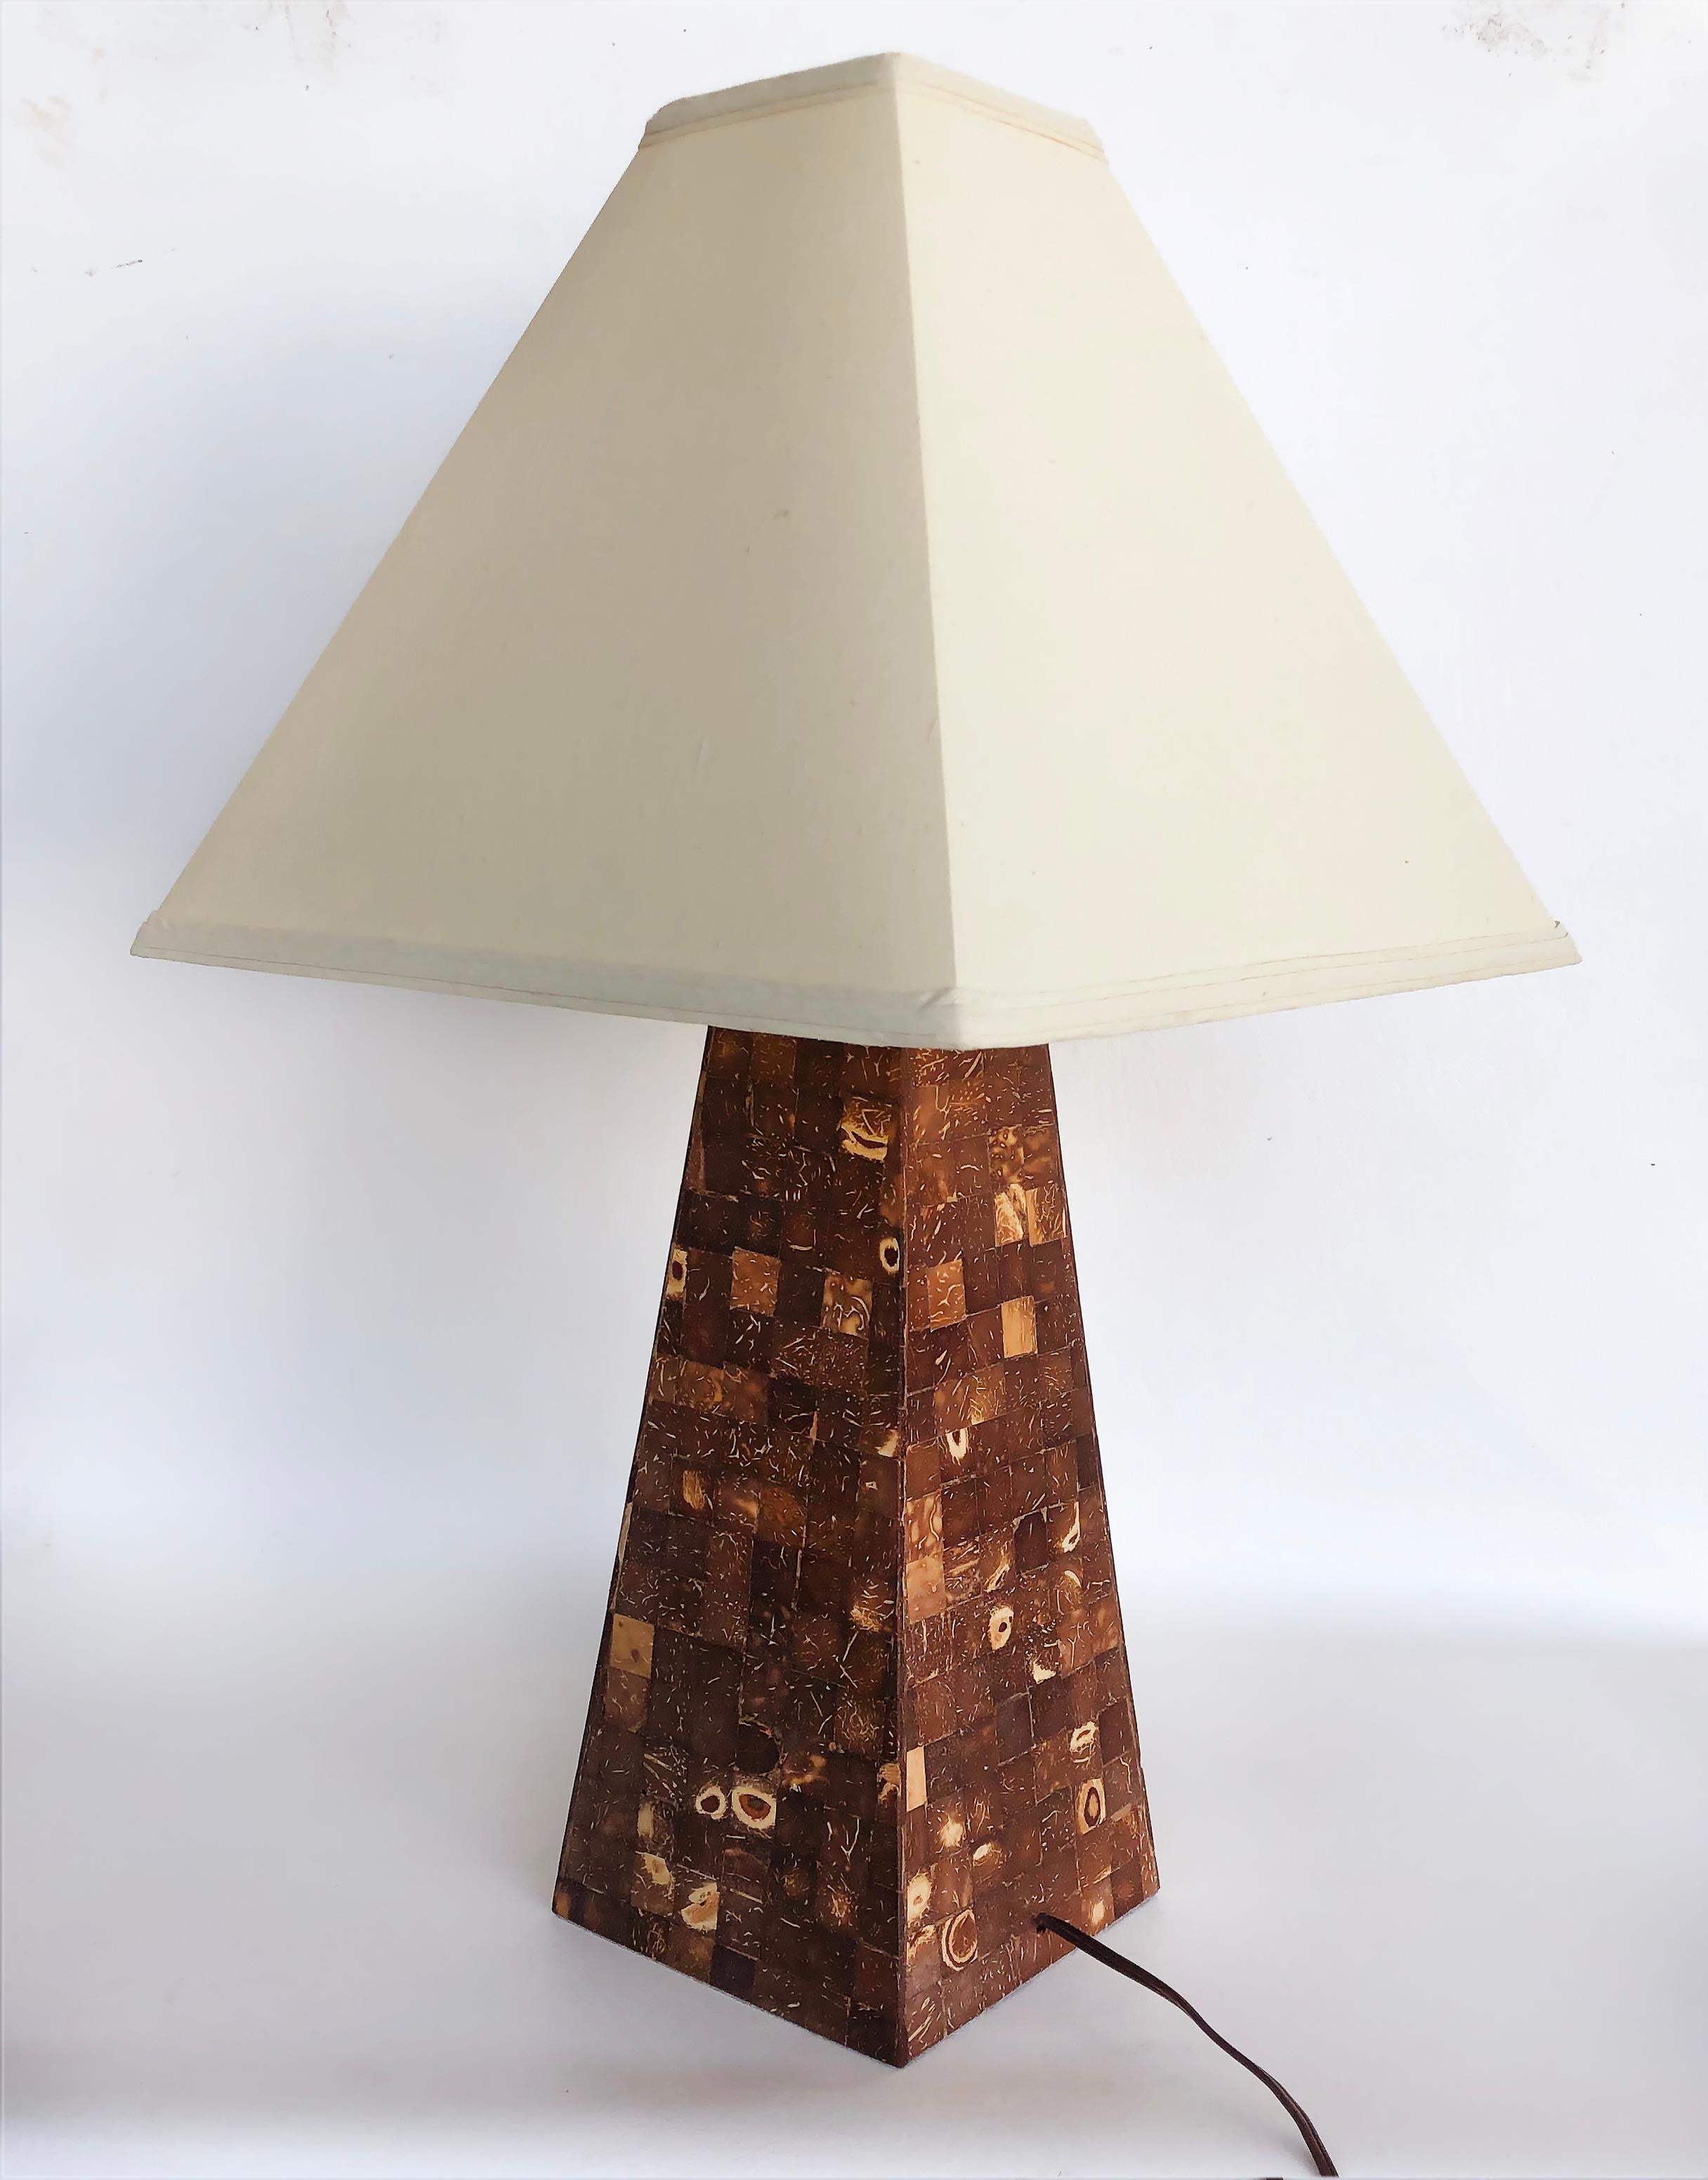 Vintage Tessellated Kokosnussschale Tischlampe

Zum Verkauf angeboten wird ein Vintage verjüngt Spalte Form Tischlampe, dass diese in polierten Mosaik Kokosnuss Shell Fliesen verkleidet. Die Lampe ist elegant und passt zu vielen